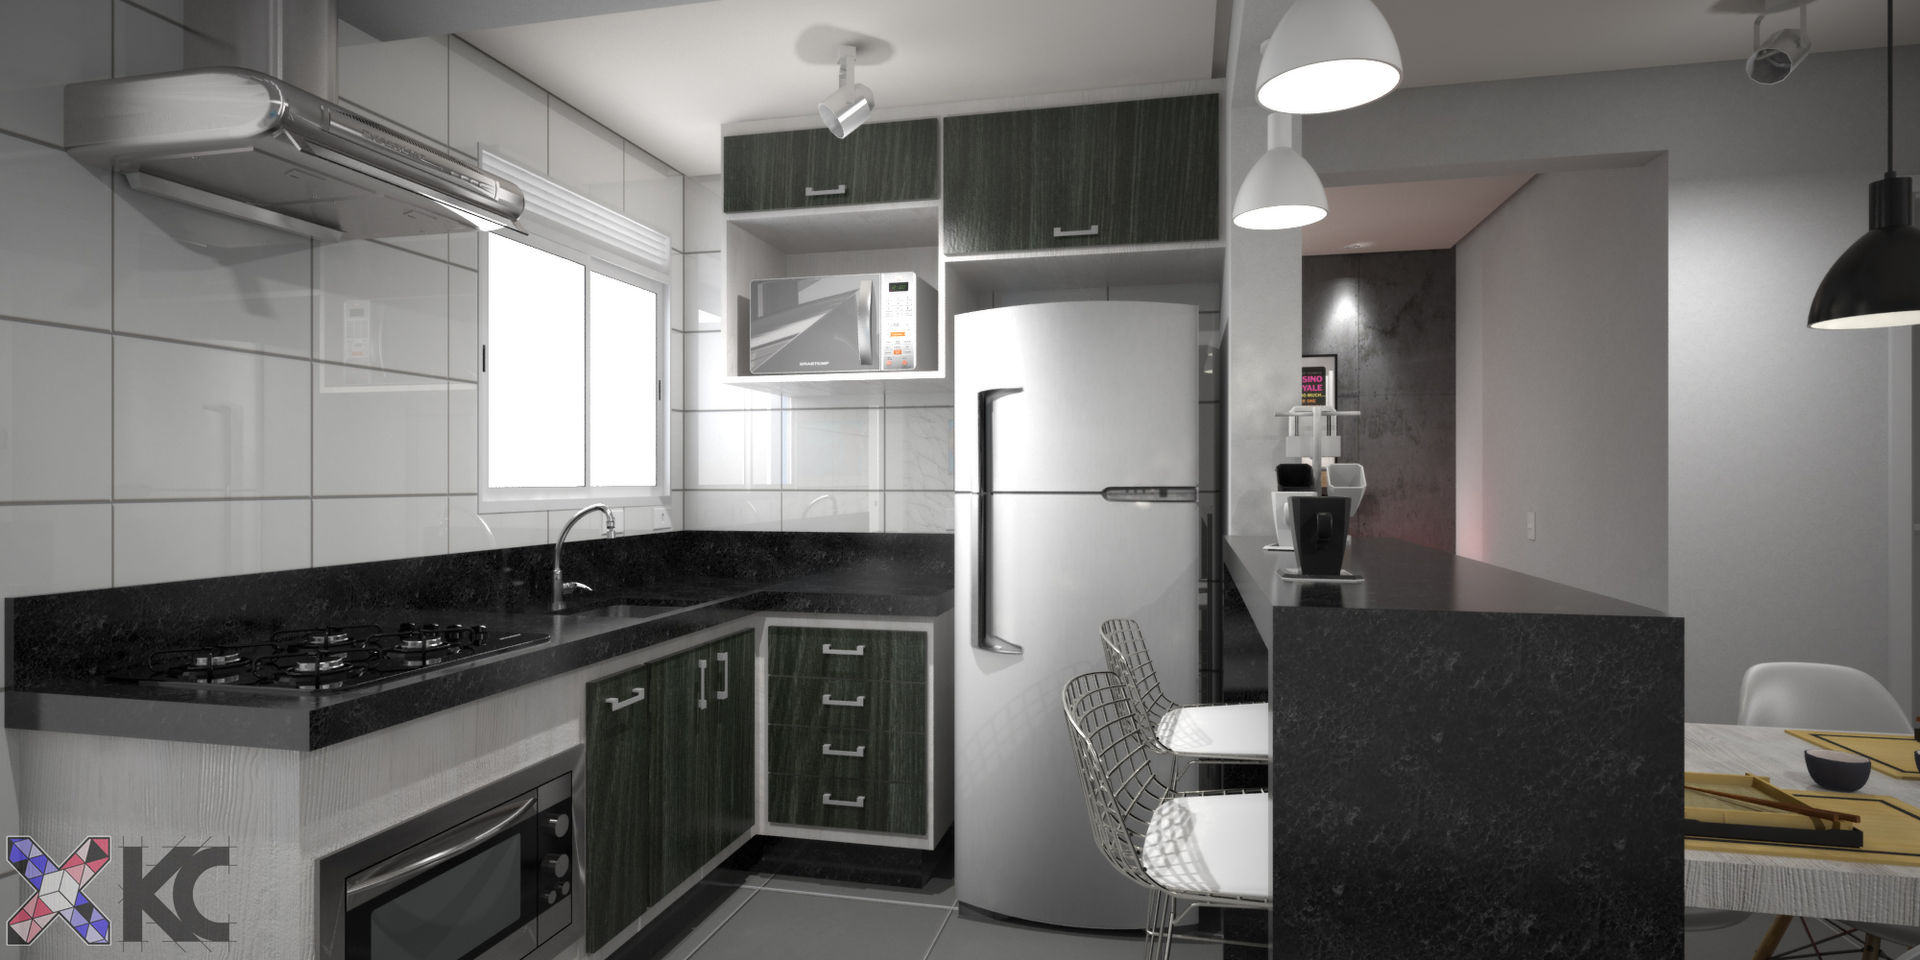 Apartamento VA, KC ARQUITETURA urbanismo e design KC ARQUITETURA urbanismo e design Modern kitchen